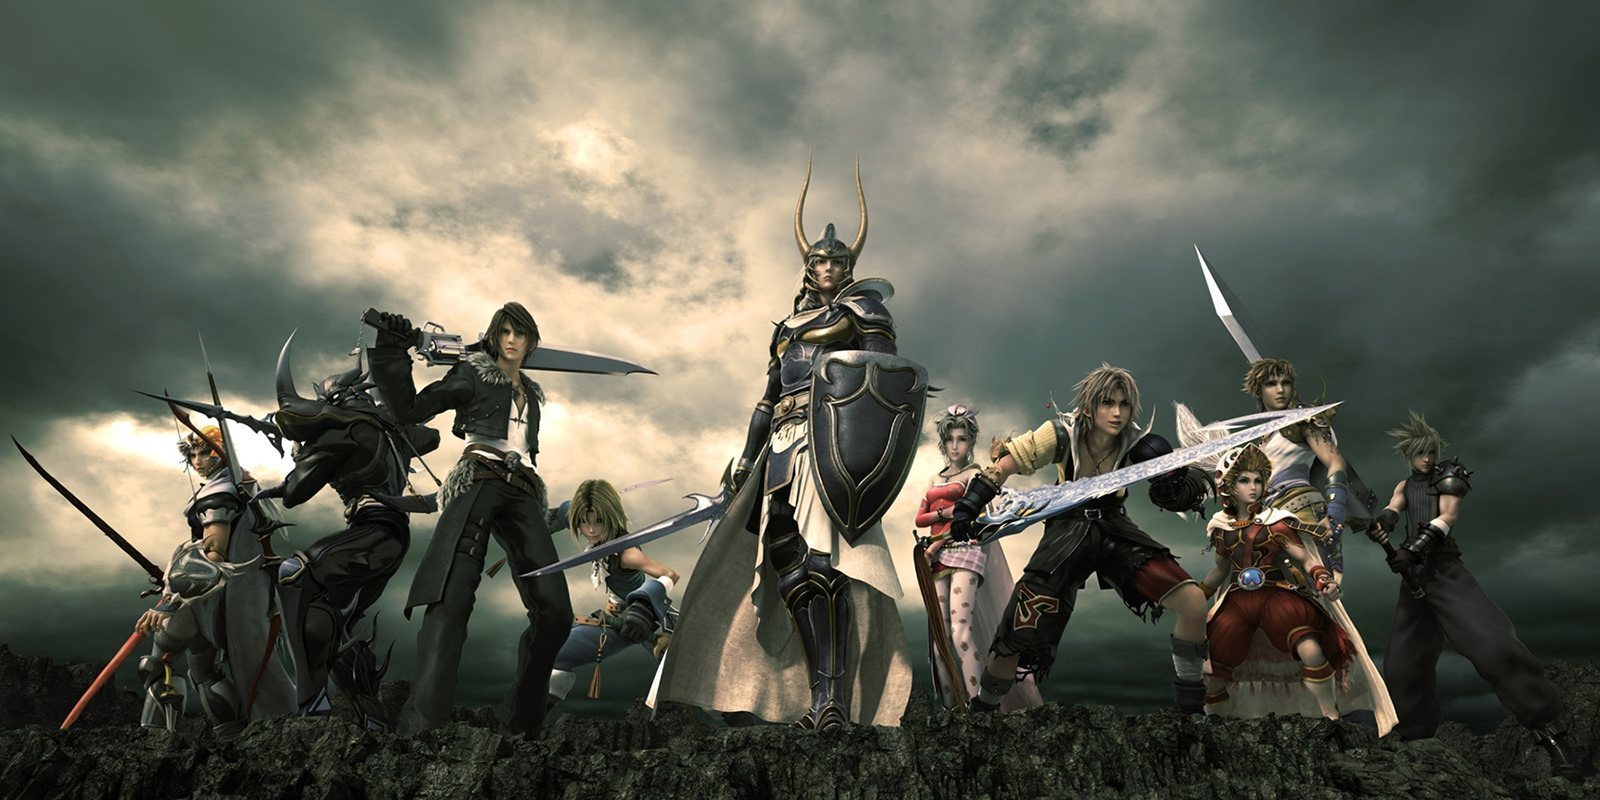 'Dissidia Final Fantasy' prepara un nuevo streaming para celebrar su décimo aniversario